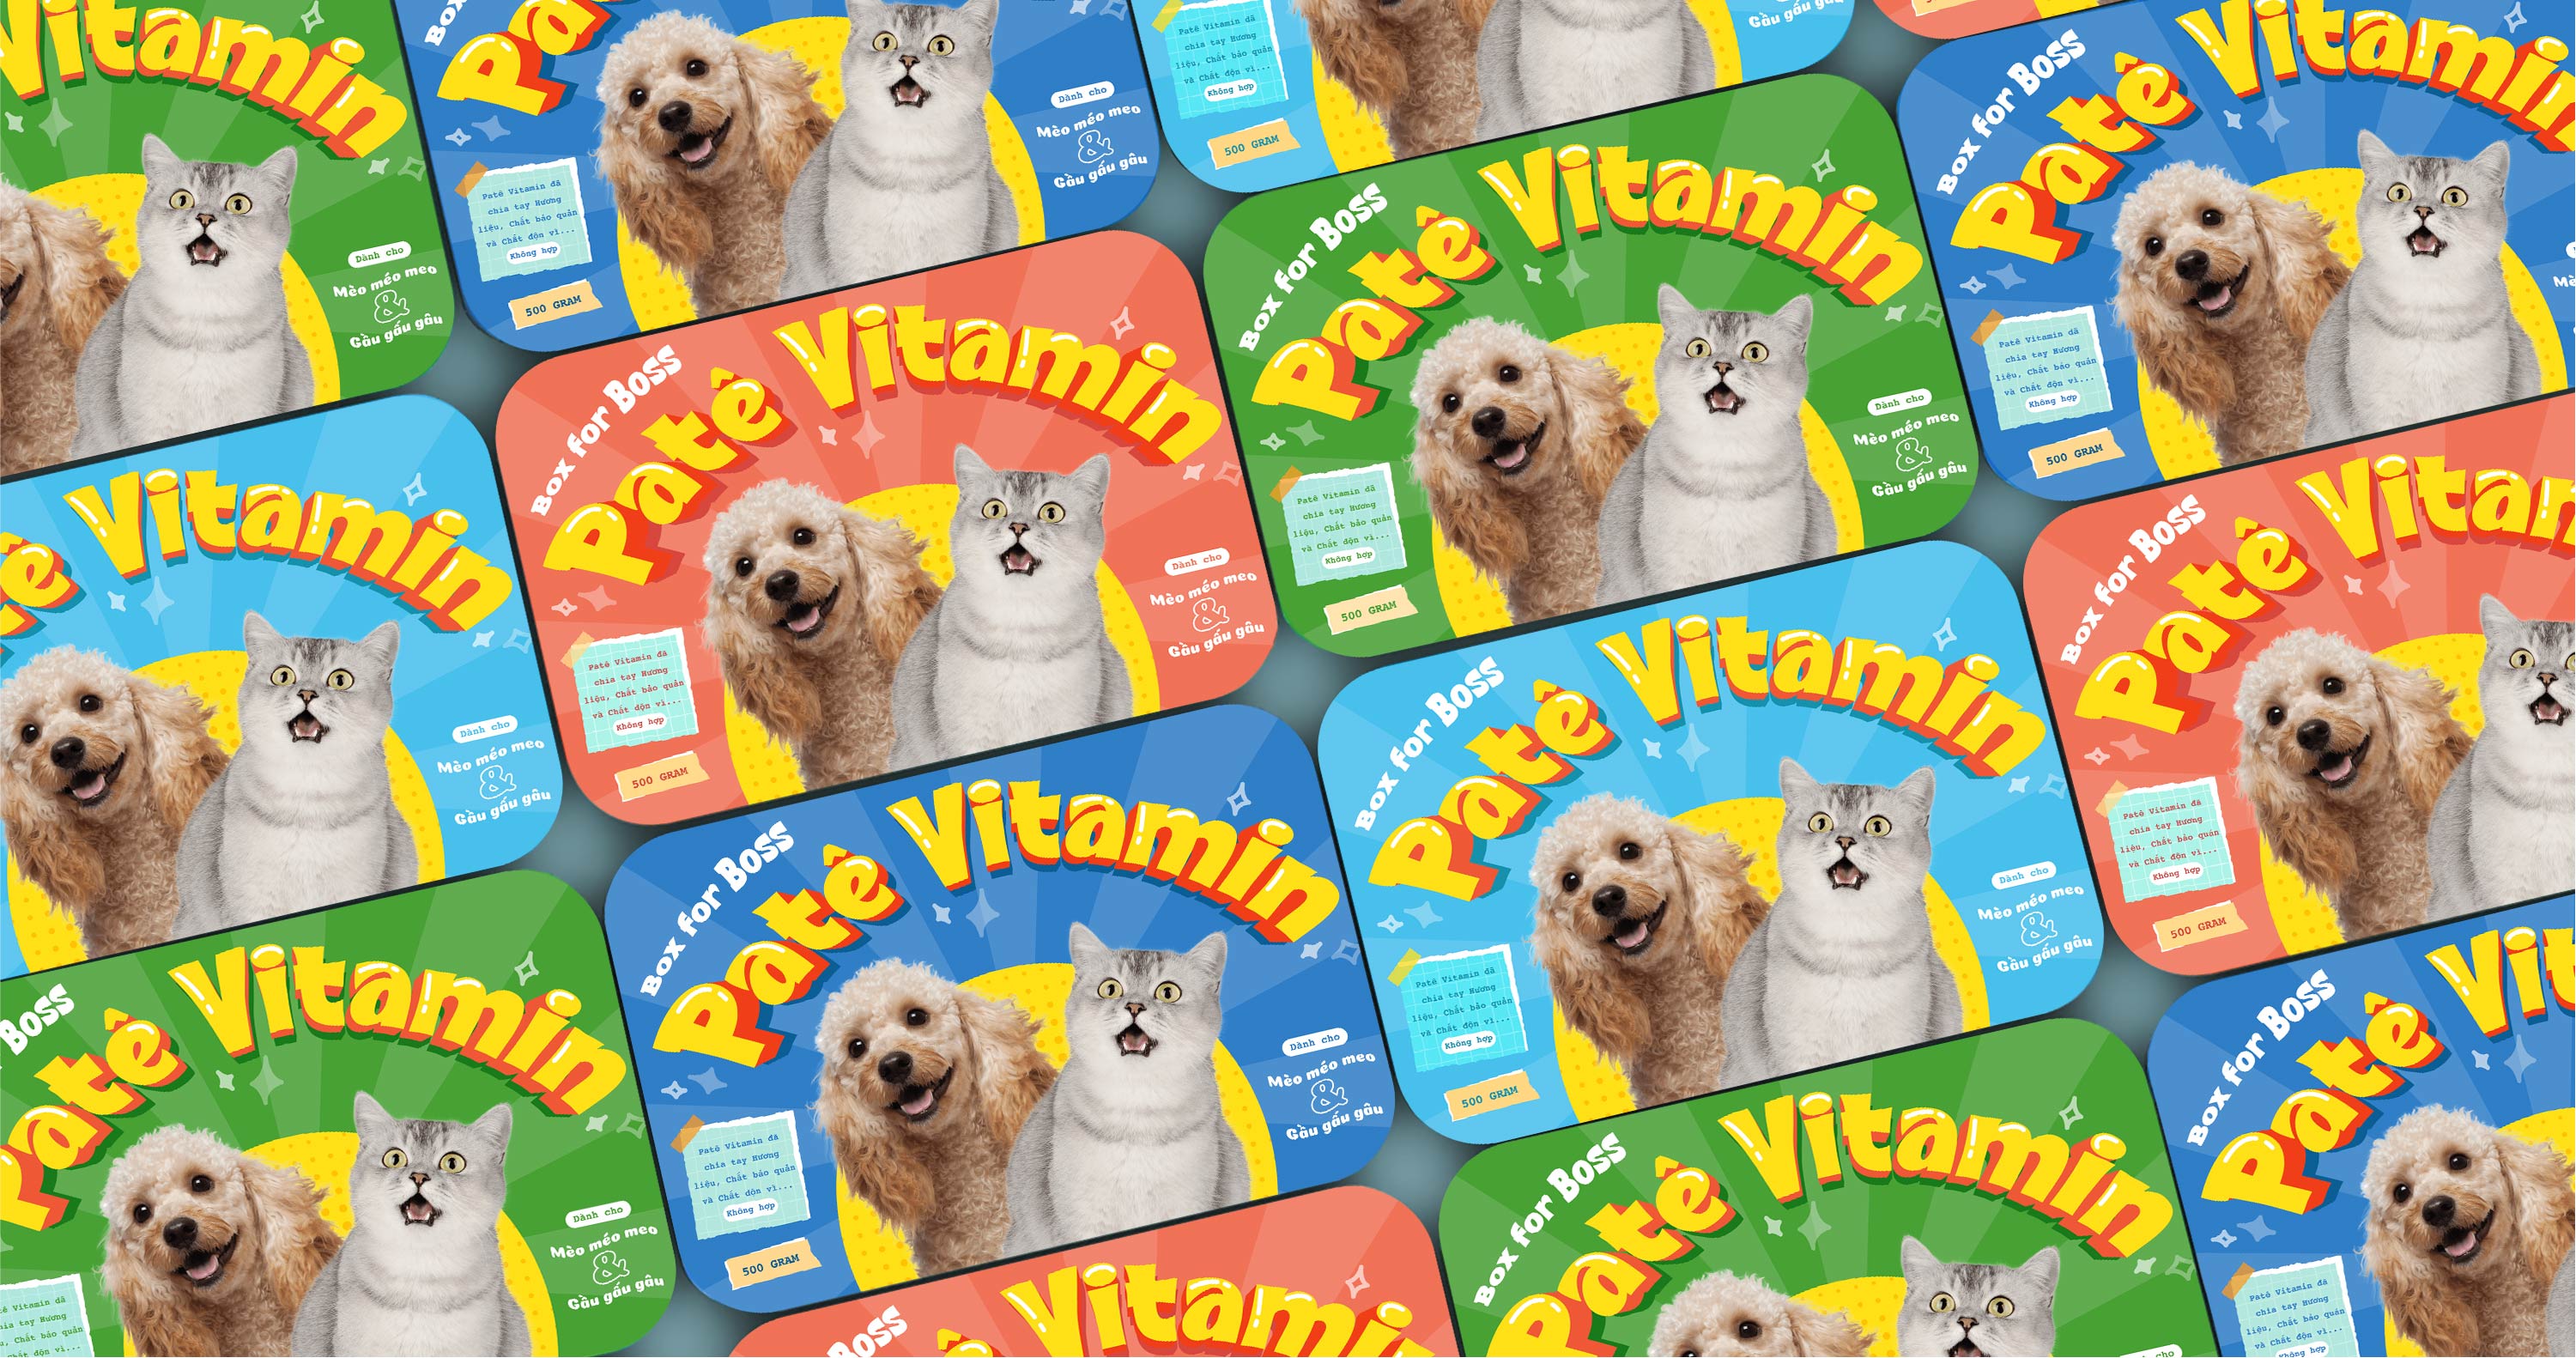 Patê Vitamin Pet Food Packaging